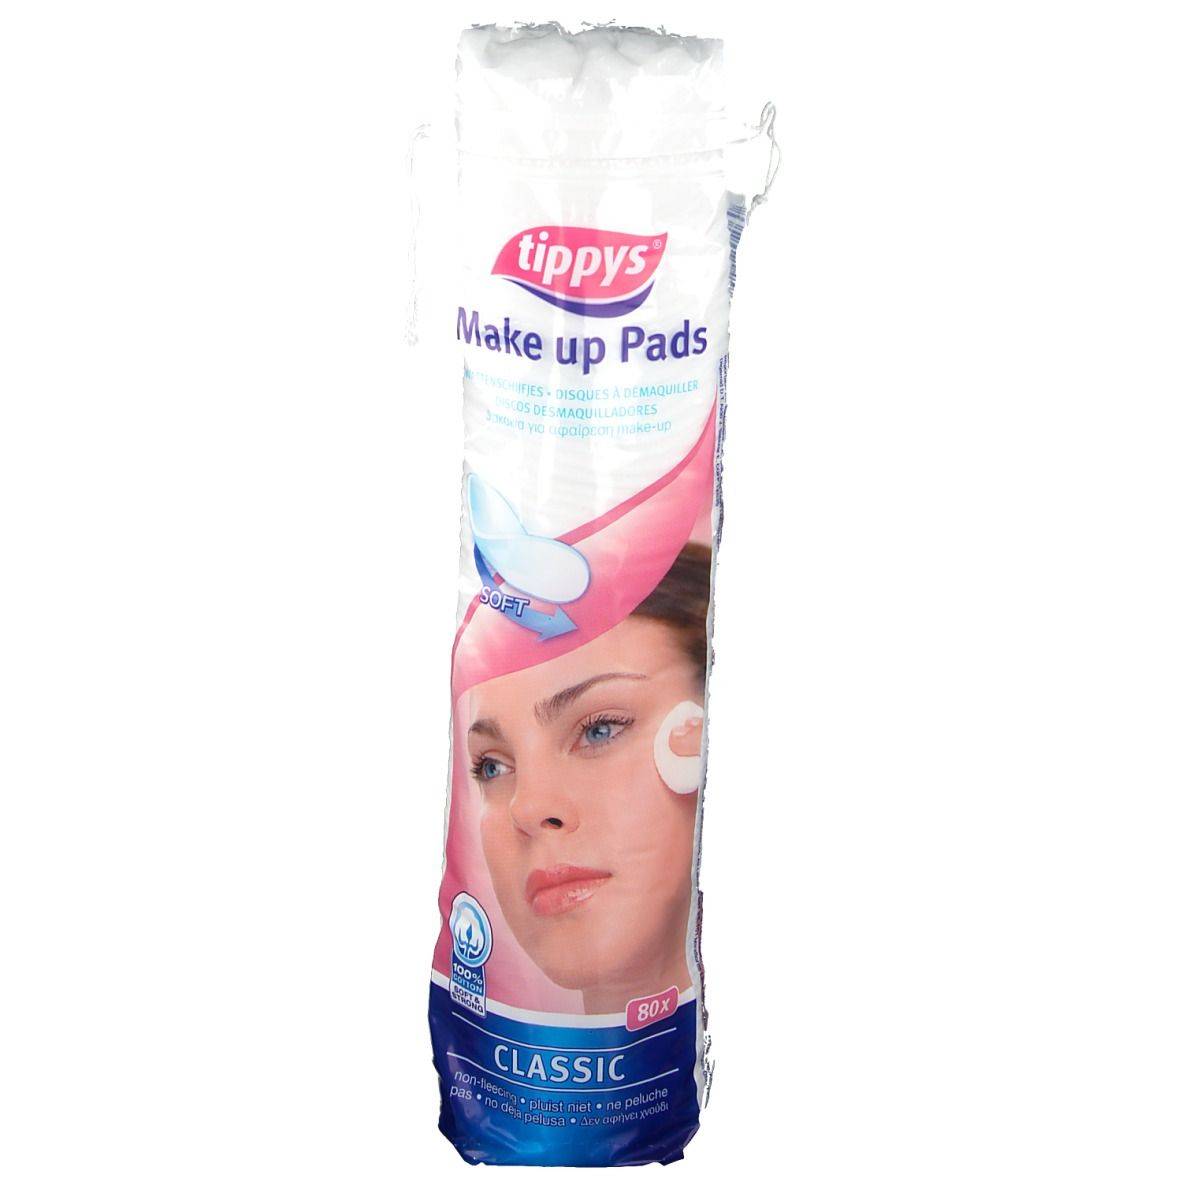 Tippys Make-up pads